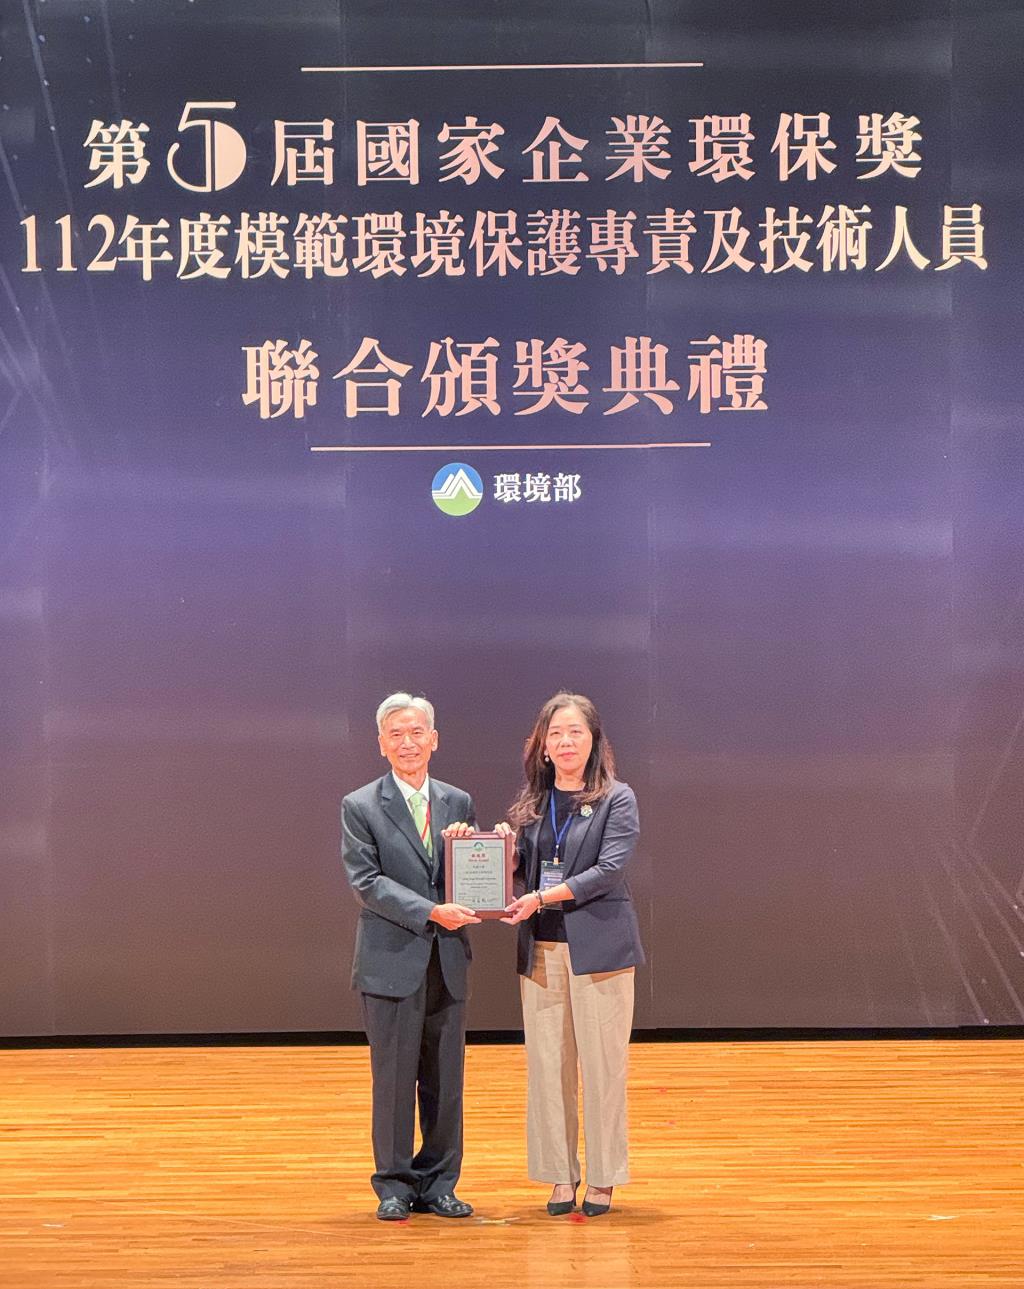 總務長黃琴芳代表領取國家企業環保獎銀級獎